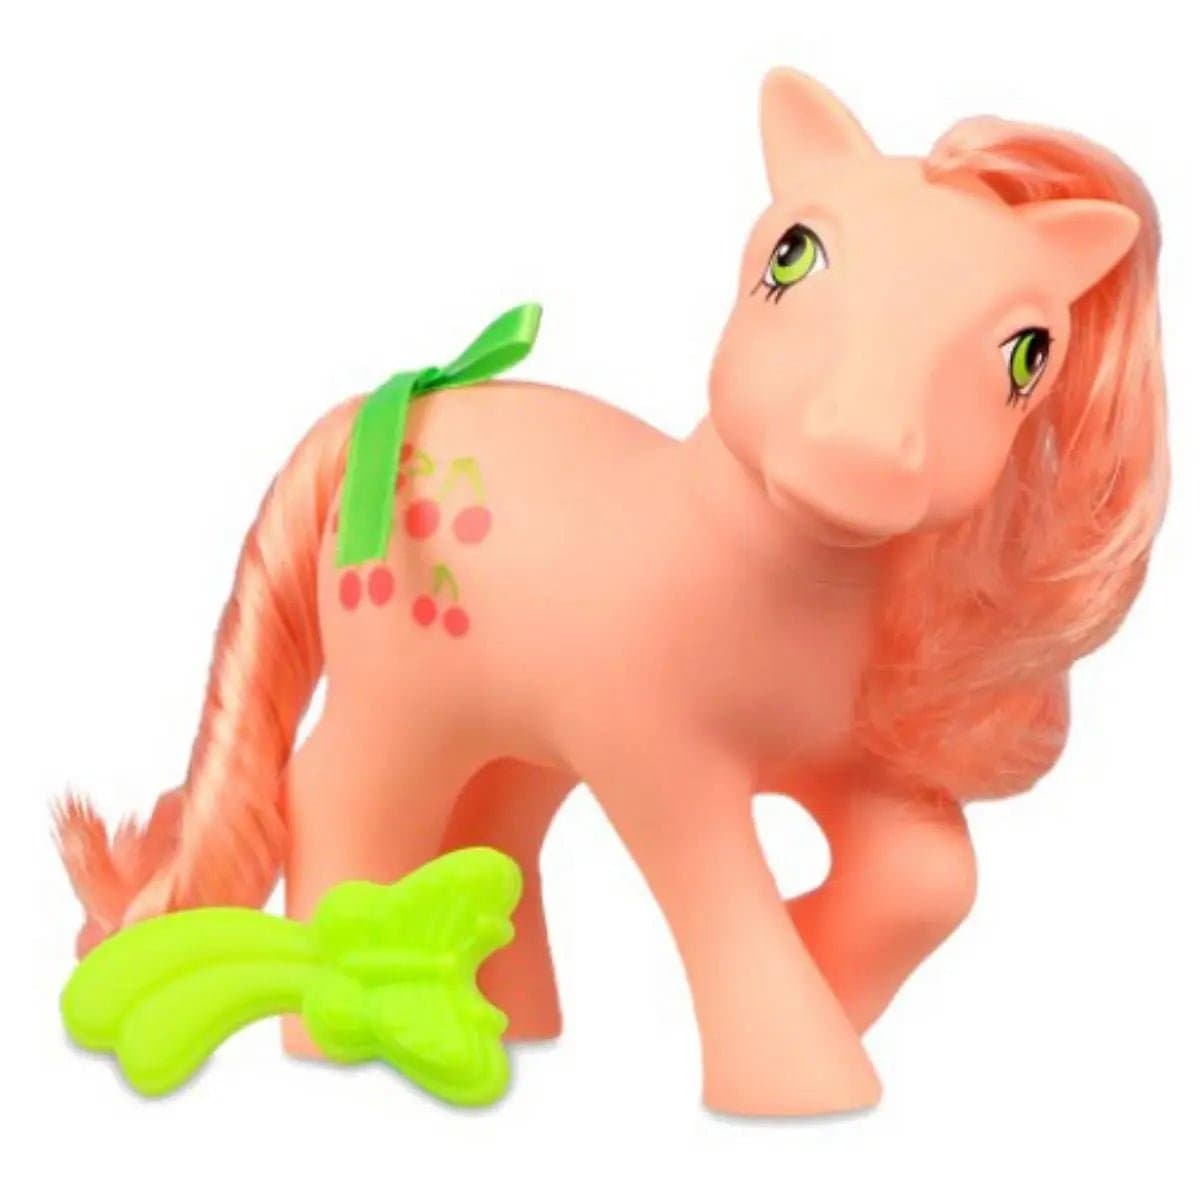 Retro My Little Pony Classic Pony Wave 4 - Cherries Jubilee - Simon's Collectibles